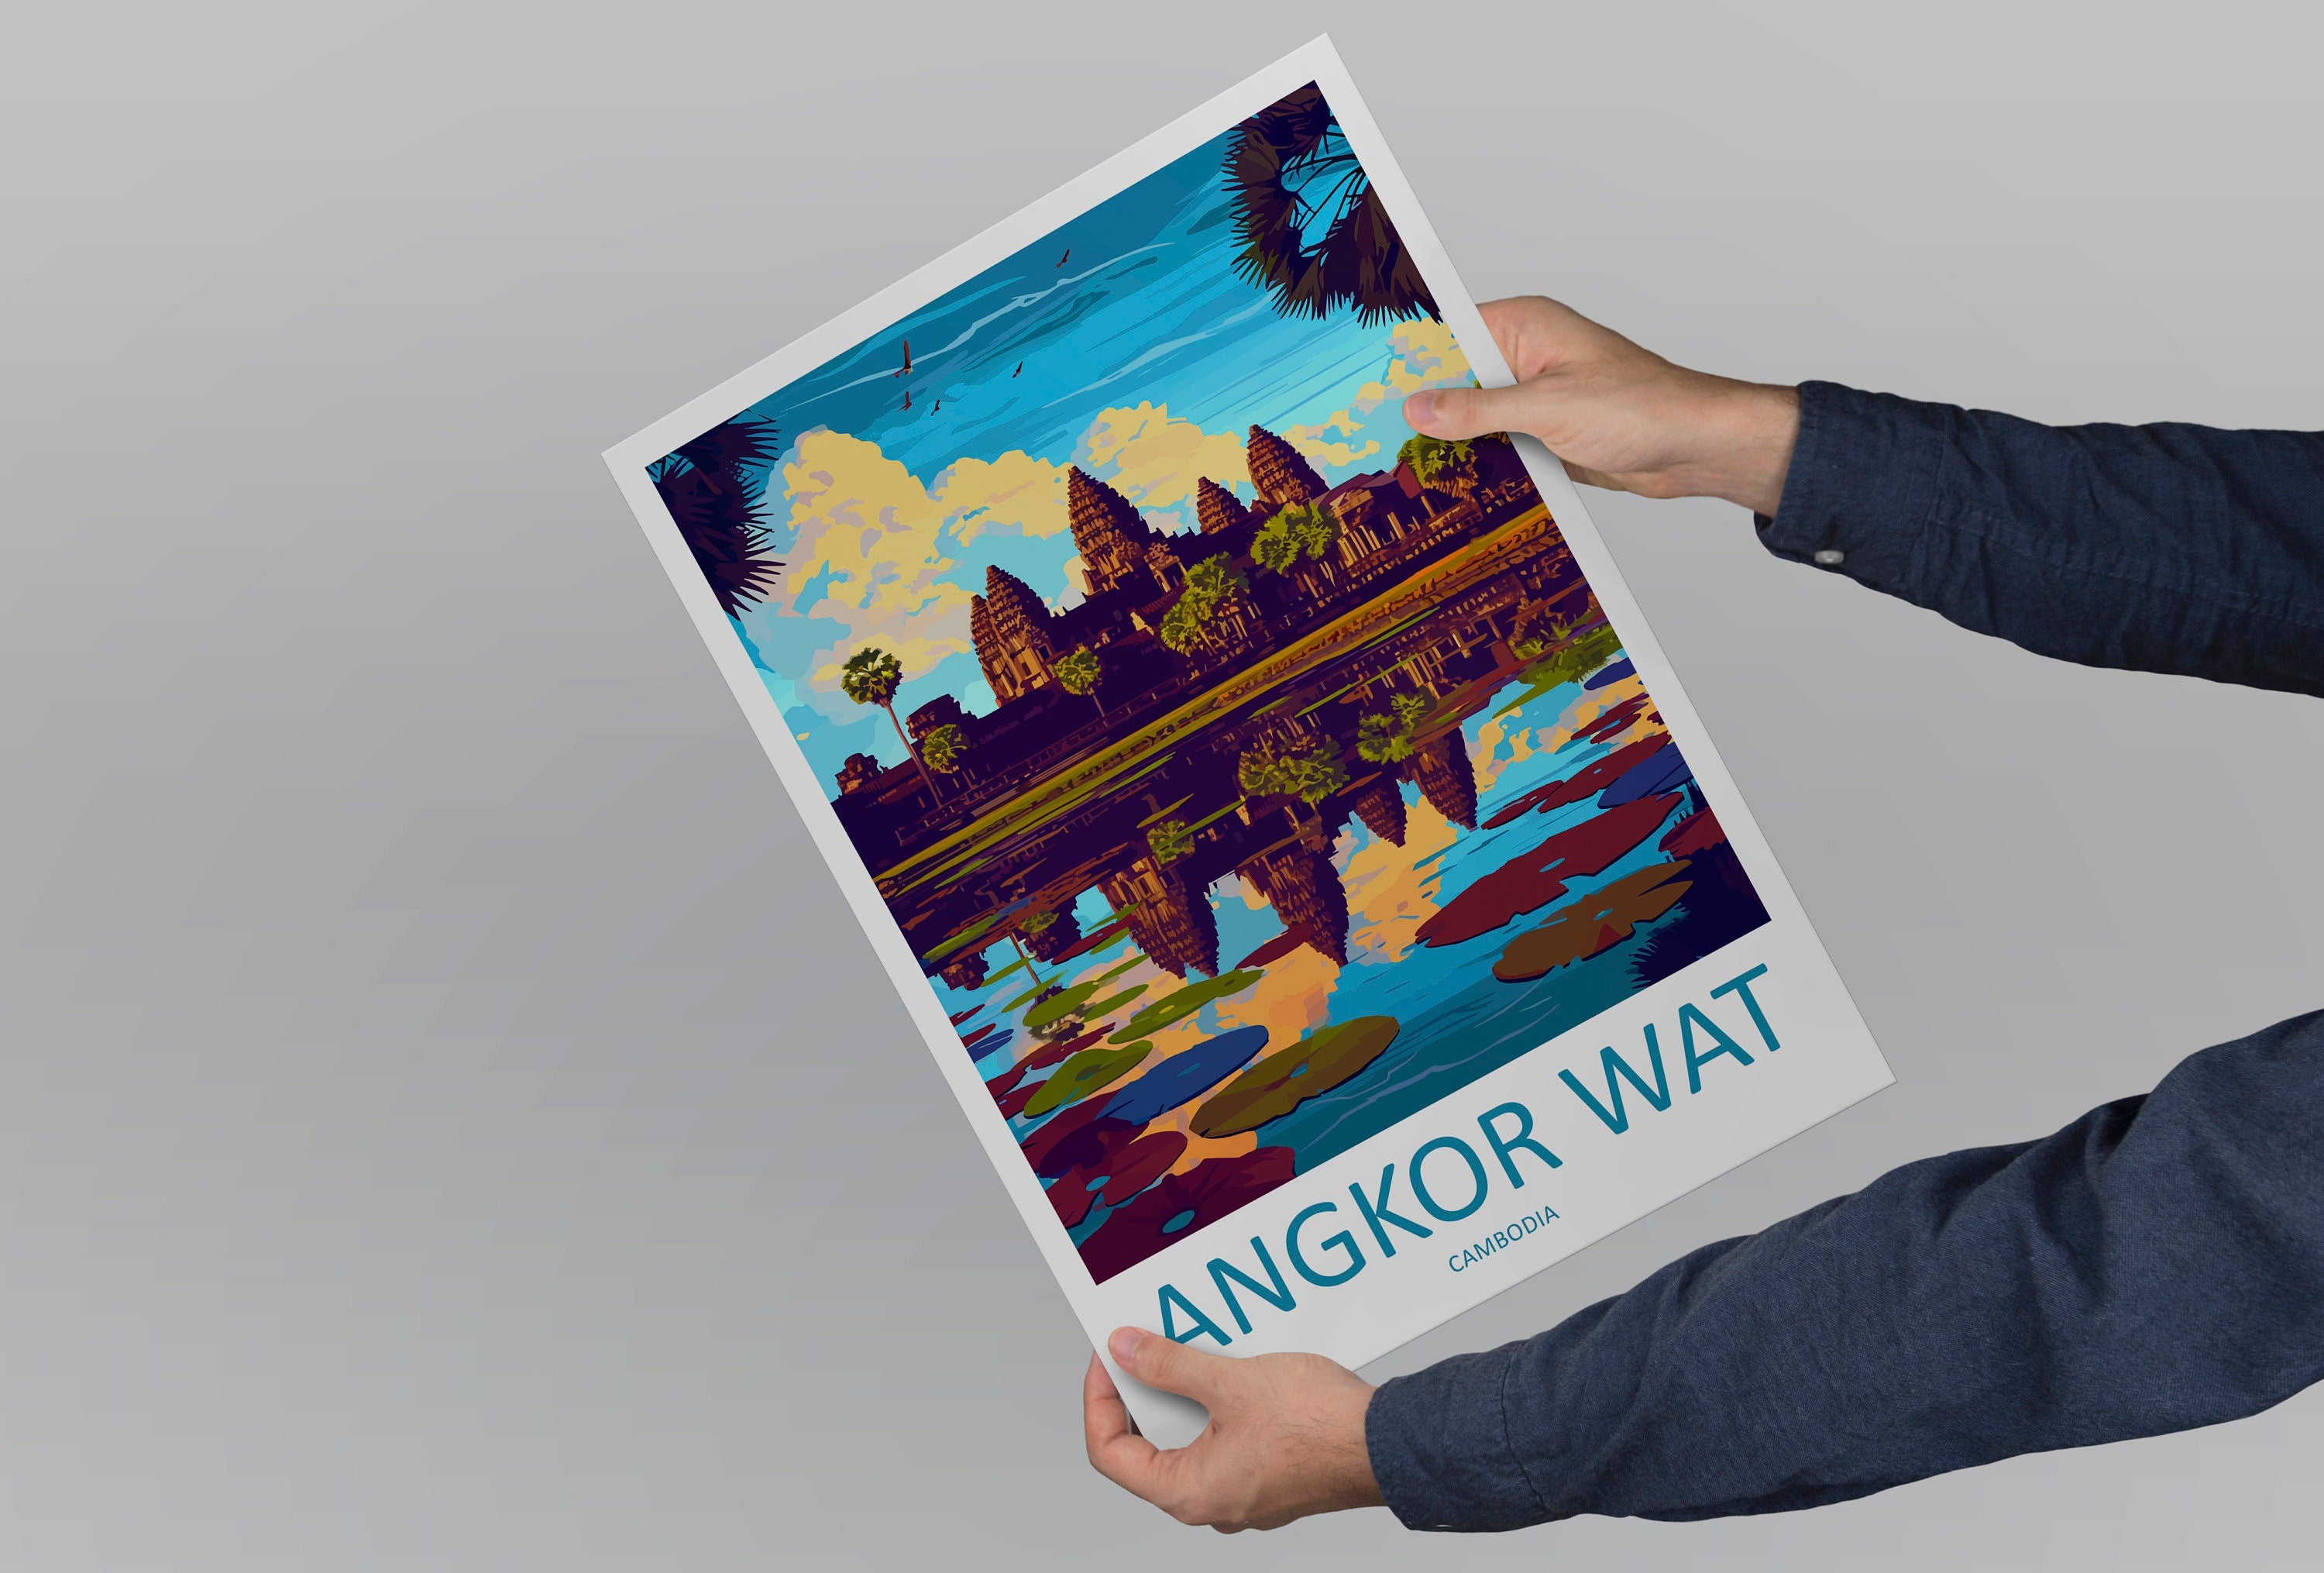 Angkor Wat Travel Print Wall Art Angkor Wat Wall Hanging Home Décor Angkor Wat Gift Art Lovers Cambodia Art Lover Gift